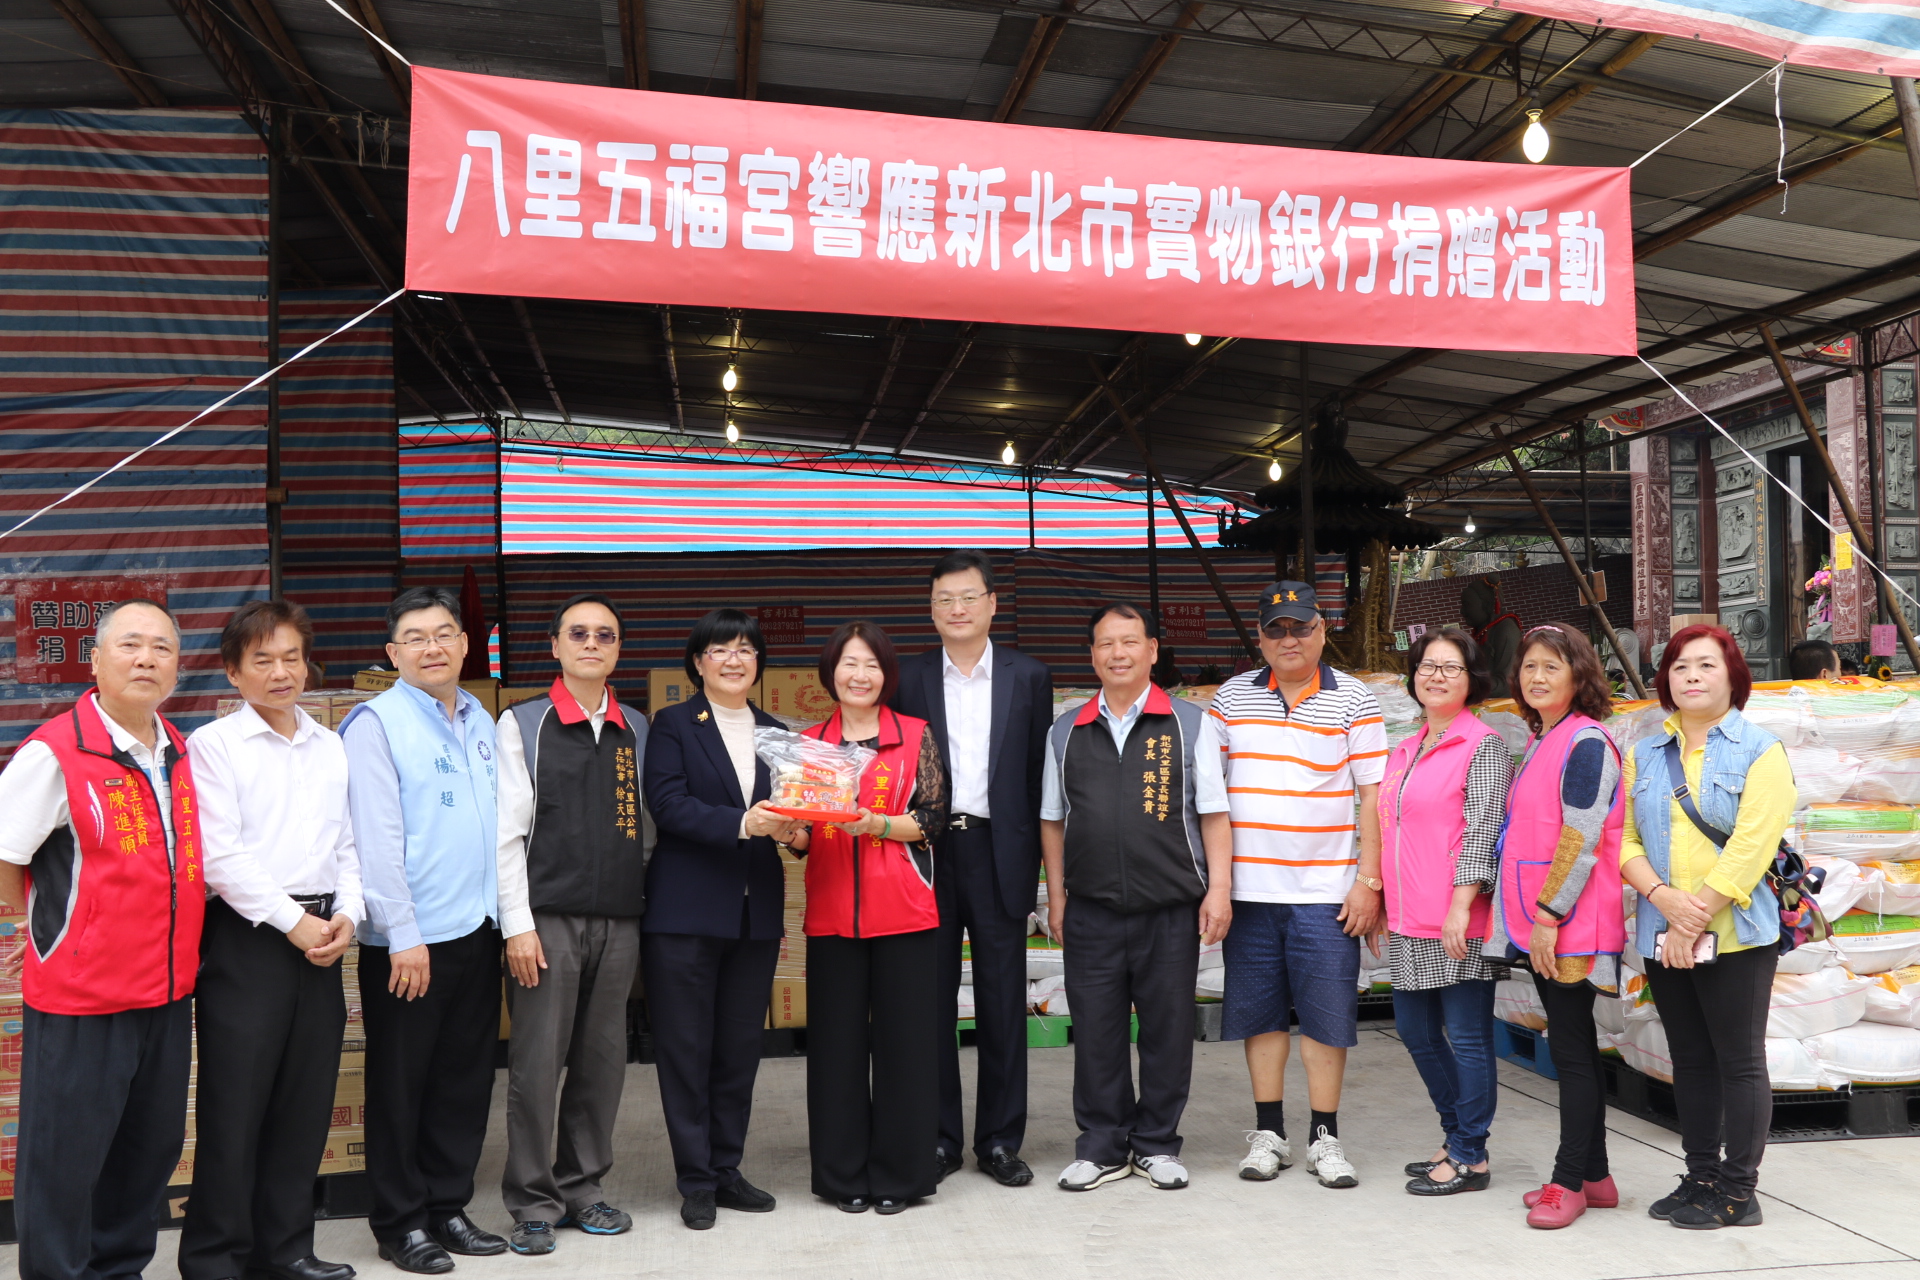 五福宮主委鄭戴麗香（中）代表捐贈白米等物資  左為社會局長張錦麗代表受贈